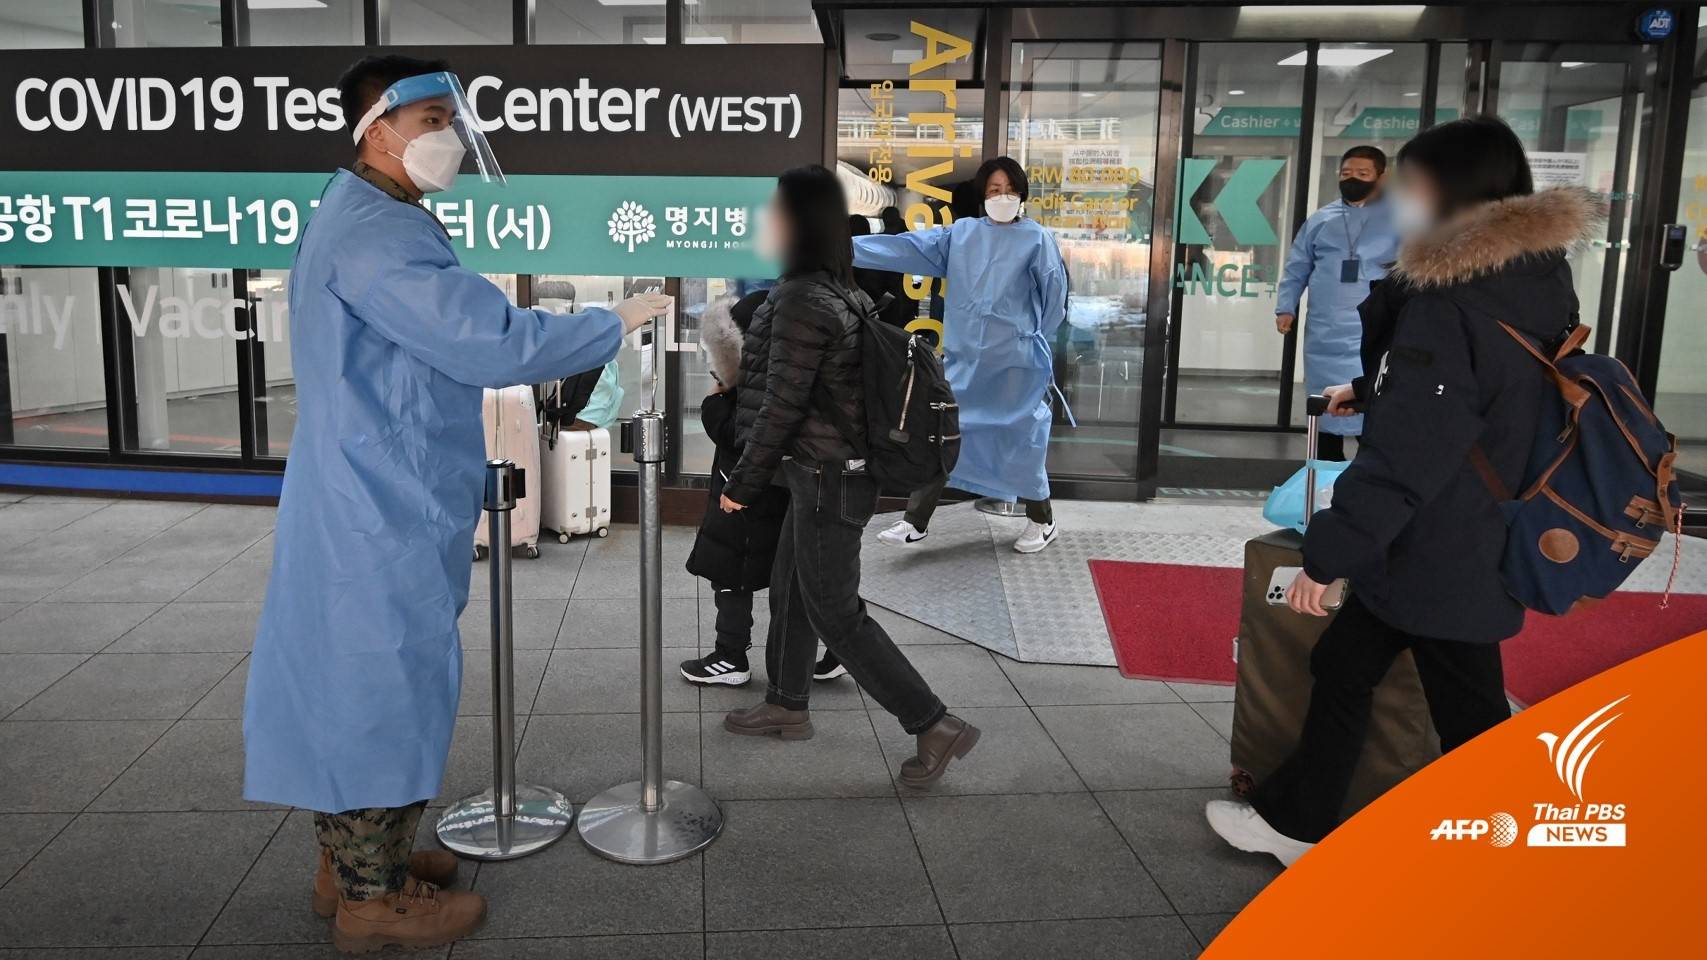 "เกาหลีใต้" เร่งติดตามชาวจีนติดโควิด-19 หายจากศูนย์กักกันโรค